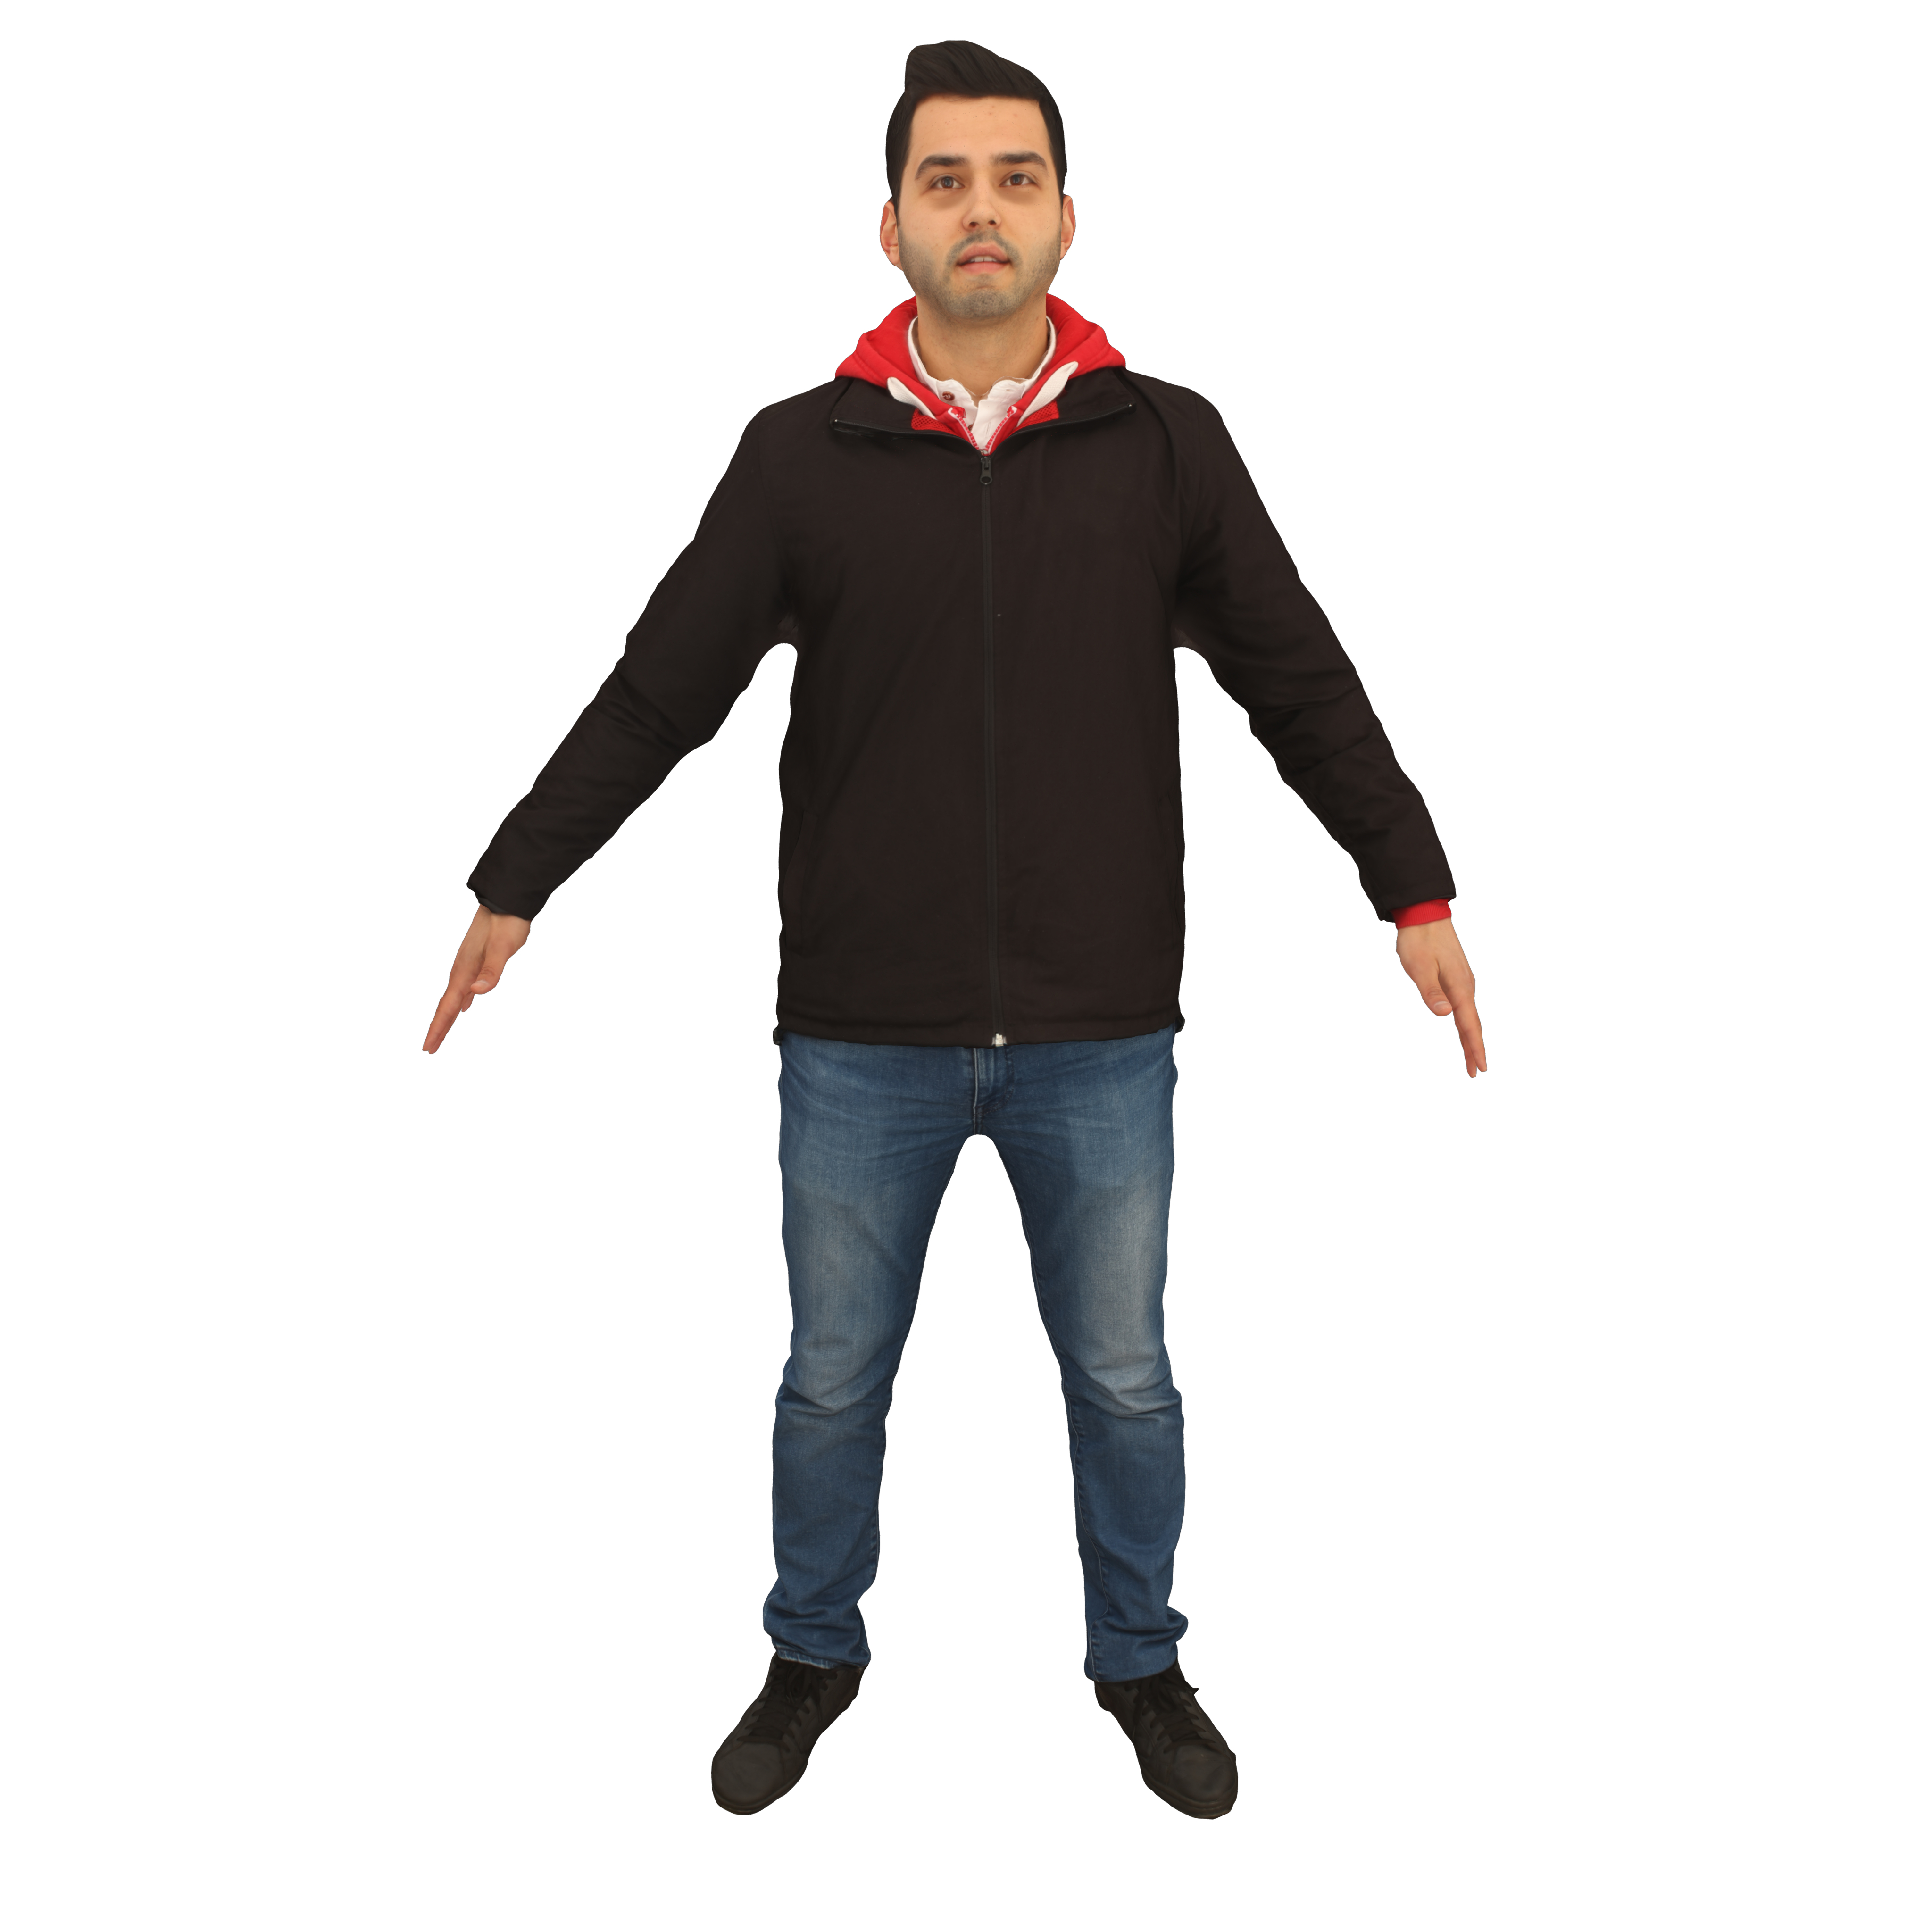 3D man hoodie a-pose - TurboSquid 1642836